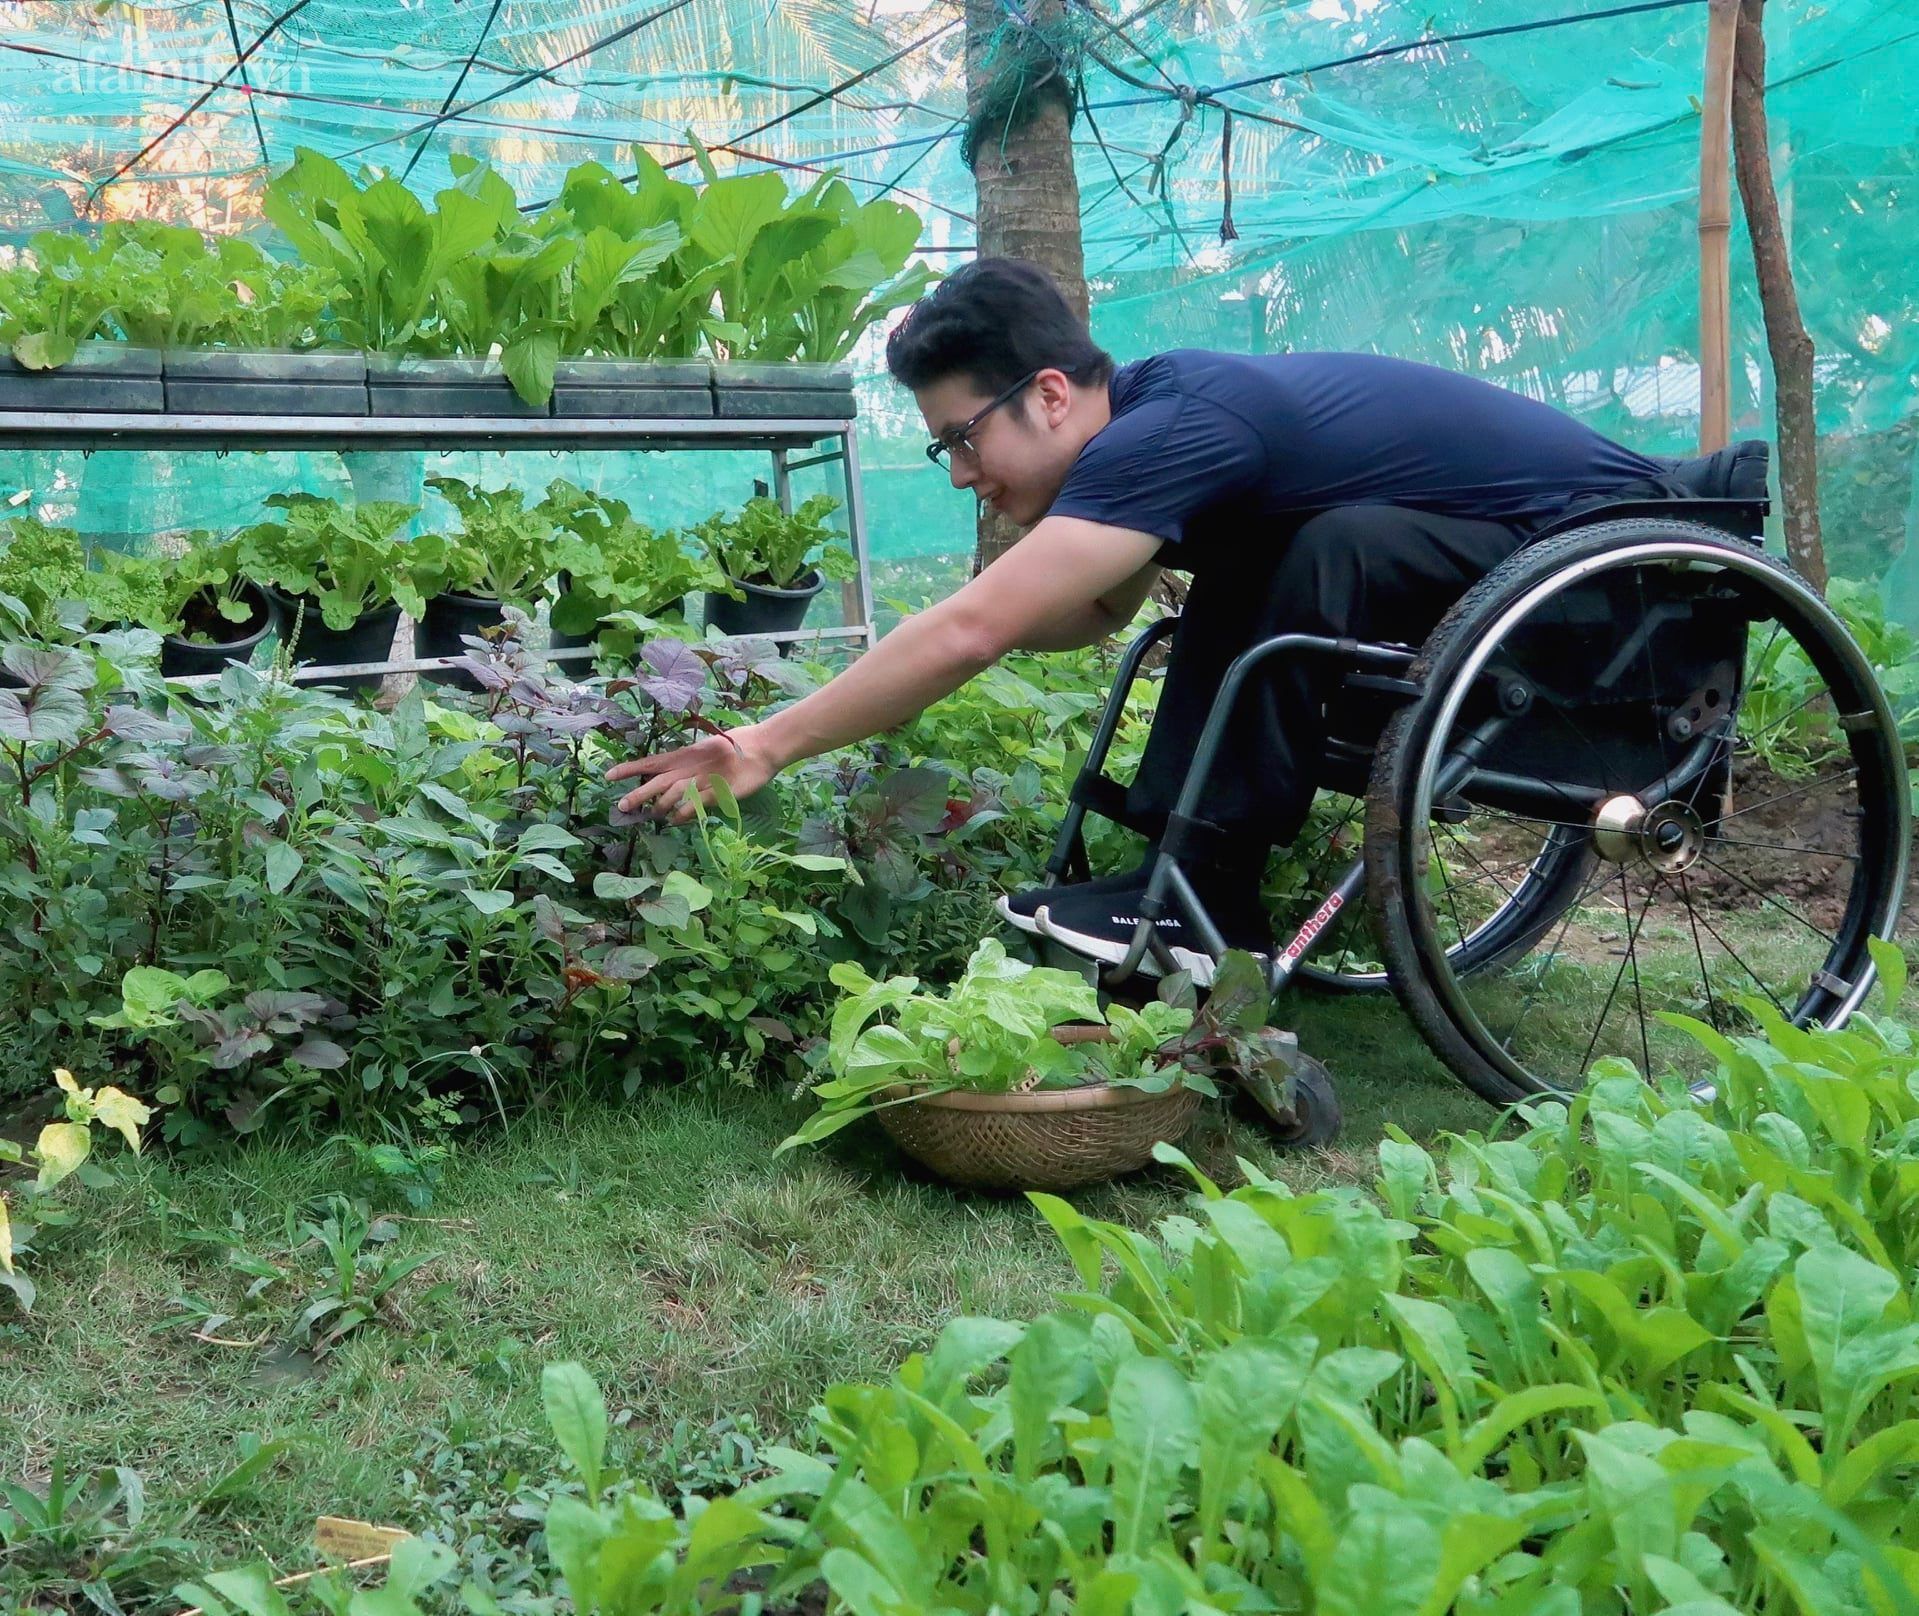 Khu vườn sai trĩu quả của cậu bé bị liệt hai chân, hàng ngày ngồi trên xe lăn chăm sóc rau quả - Ảnh 5.